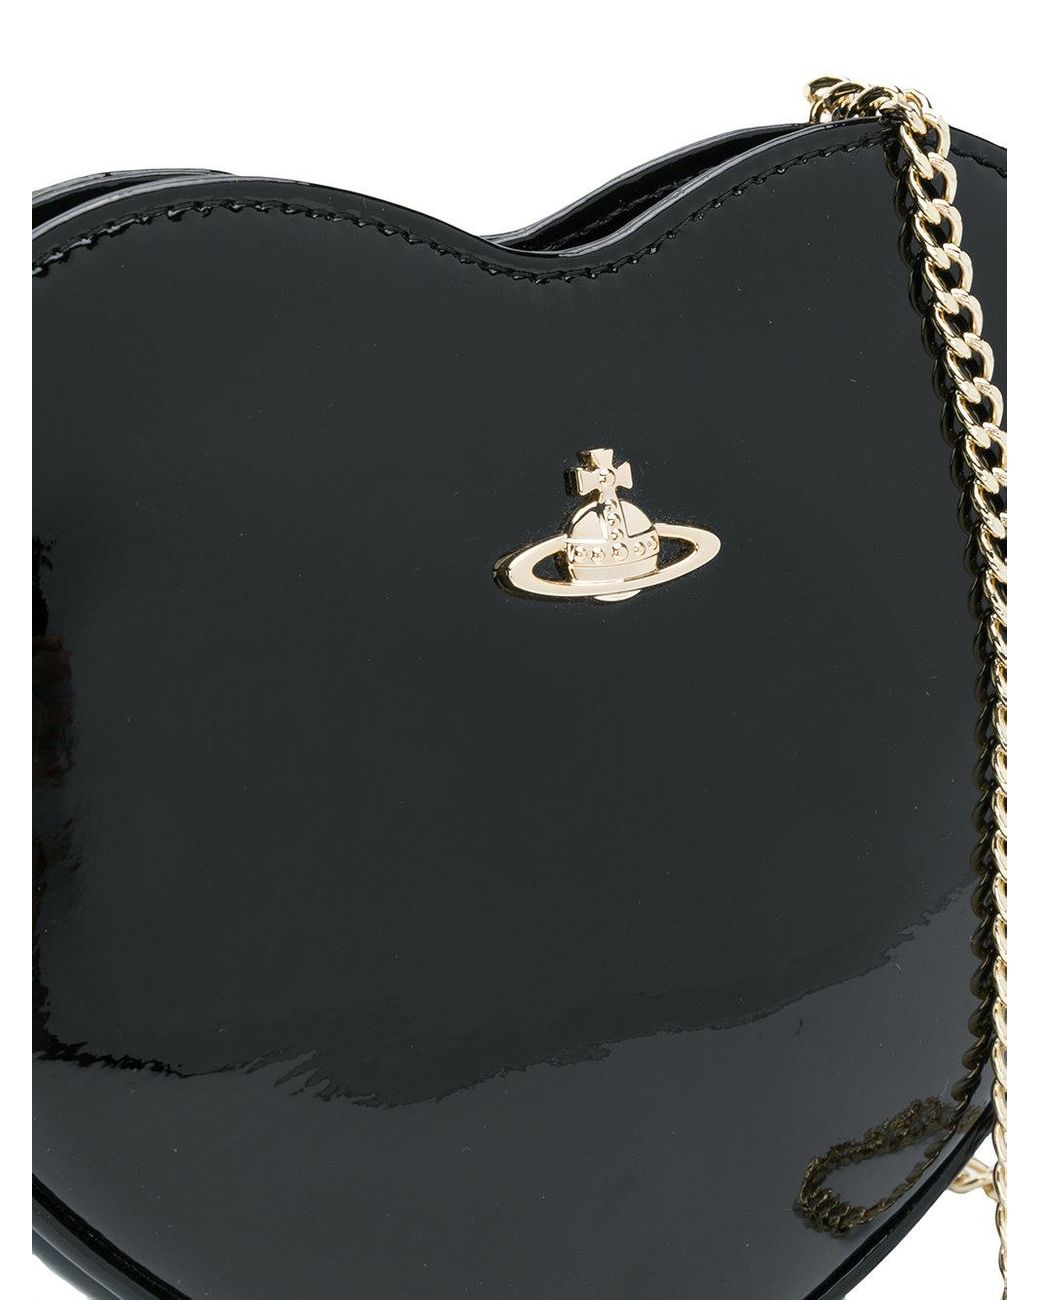 Vivienne Westwood Saffiano New Heart Leather Shoulder Bag in Black